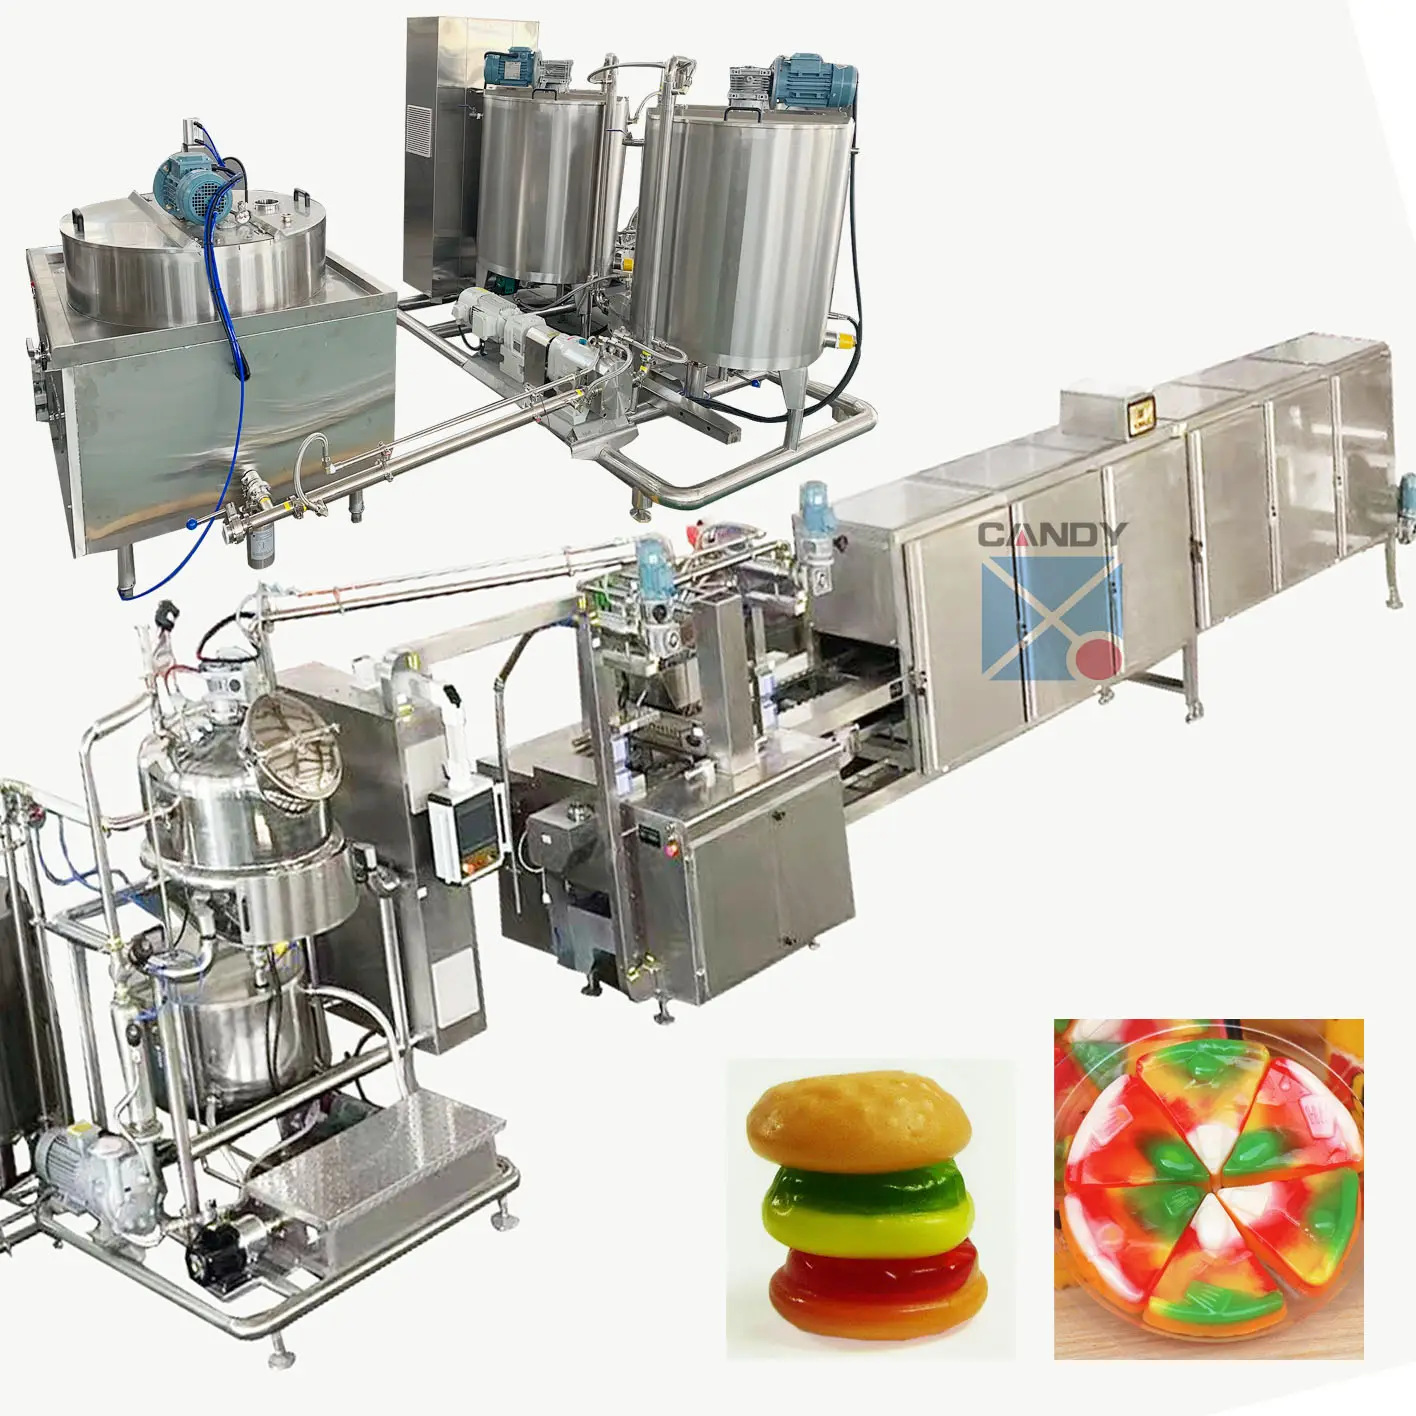 ماكينة إعداد الحلوى المطاطية والبرجر والبيتزا 150 كجم في الساعة، خط إنتاج الحلوى من طبقتين، ماكينات الحلوى للتصدير